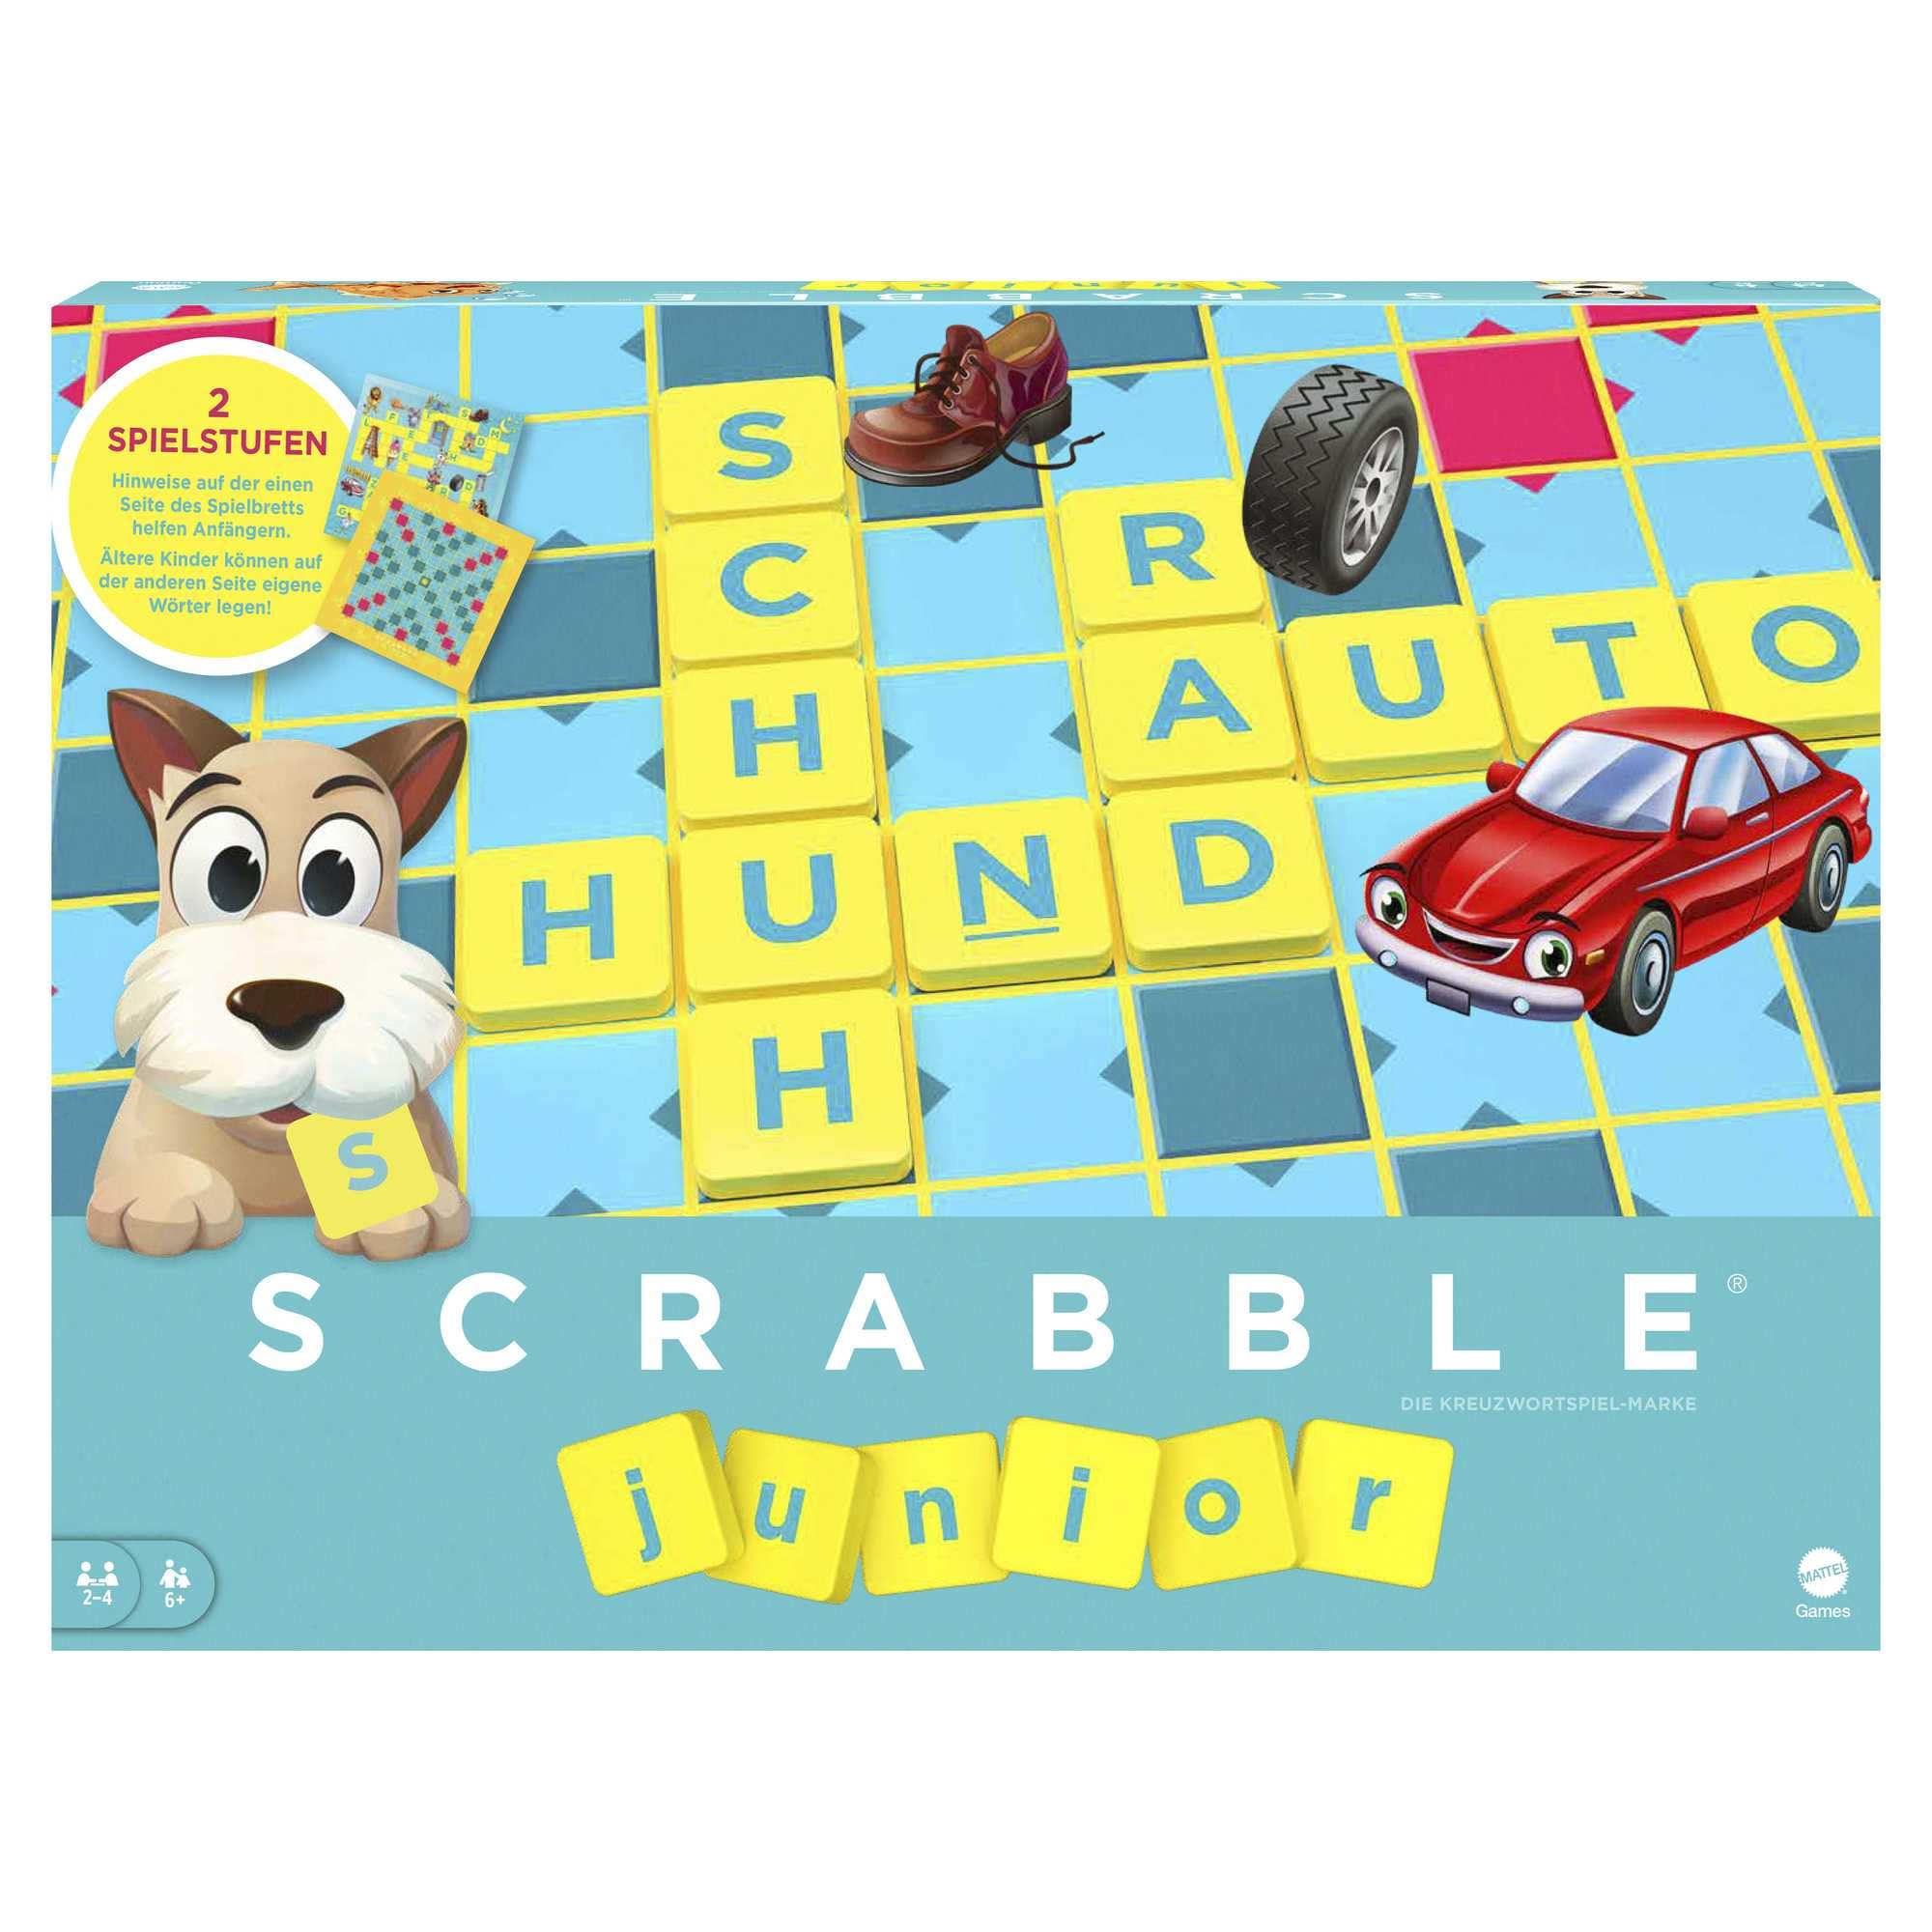 Mattel Games Scrabble Junior Wörterspiel und Kinderspiel, Kinderspiele Brettspiele geeignet für 2-4 Kinder ab 6 Jahren, Design kann variieren, Deutsche Version, Y9670